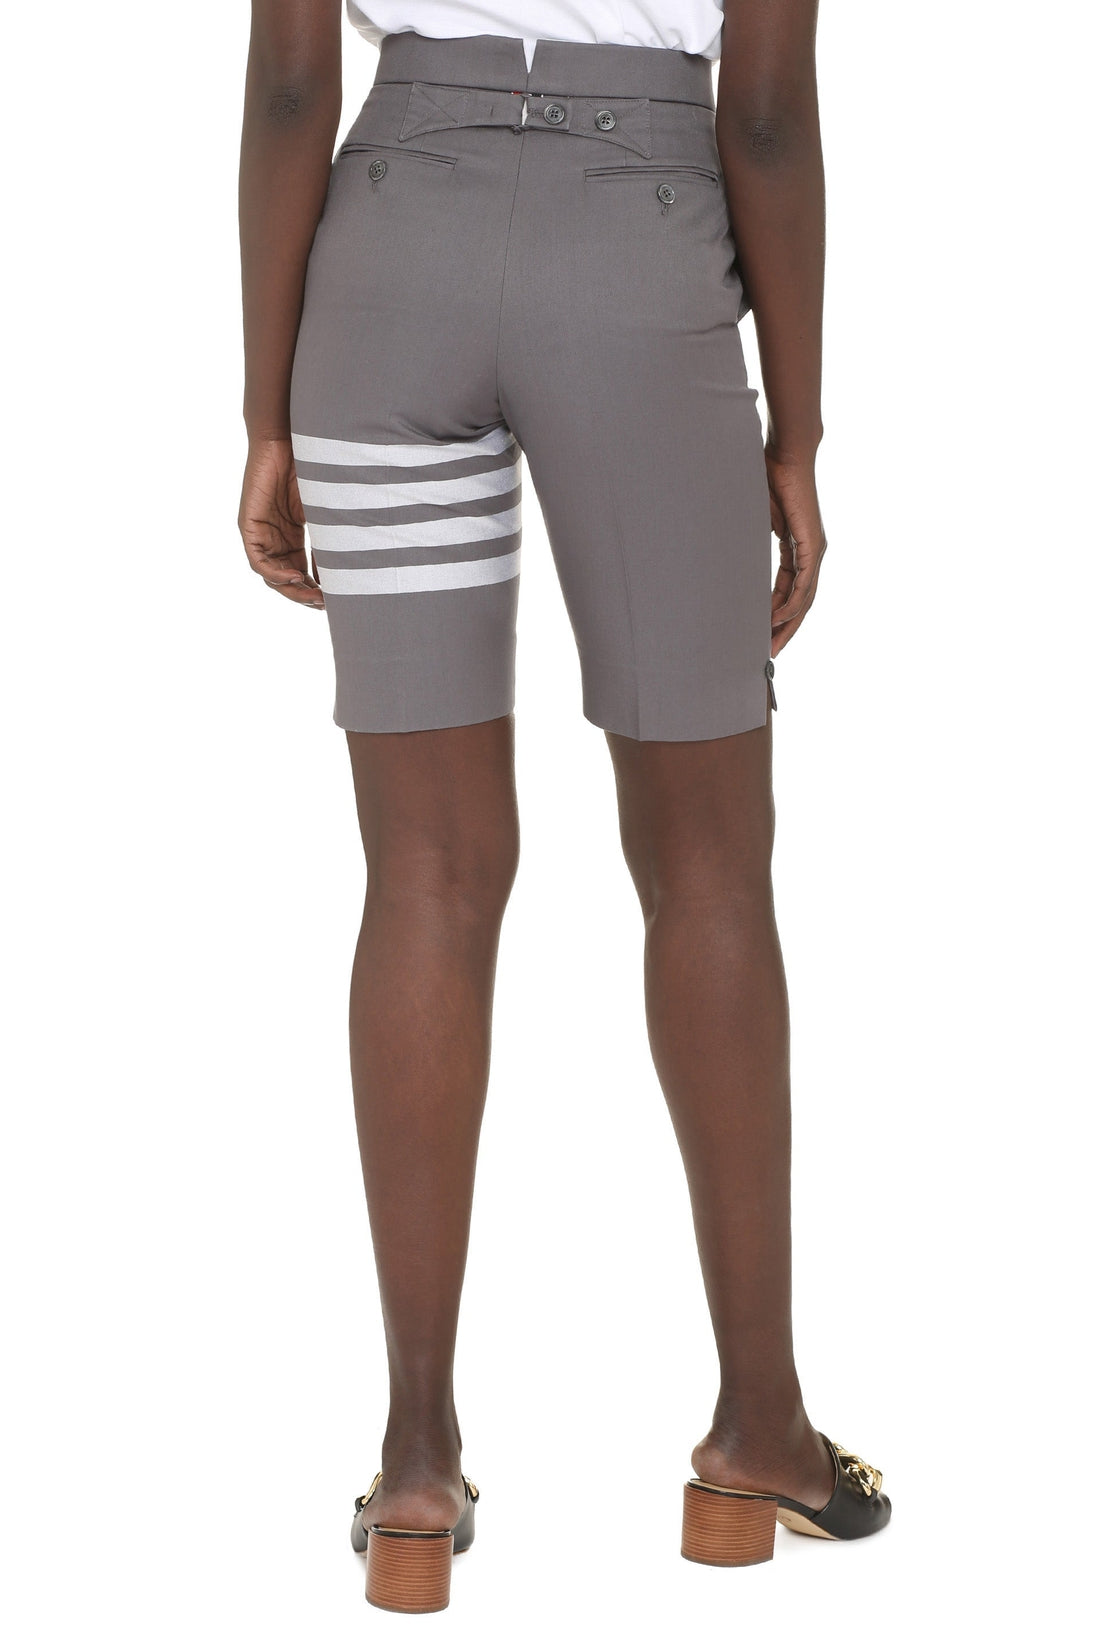 Thom Browne-OUTLET-SALE-Cotton bermuda shorts-ARCHIVIST